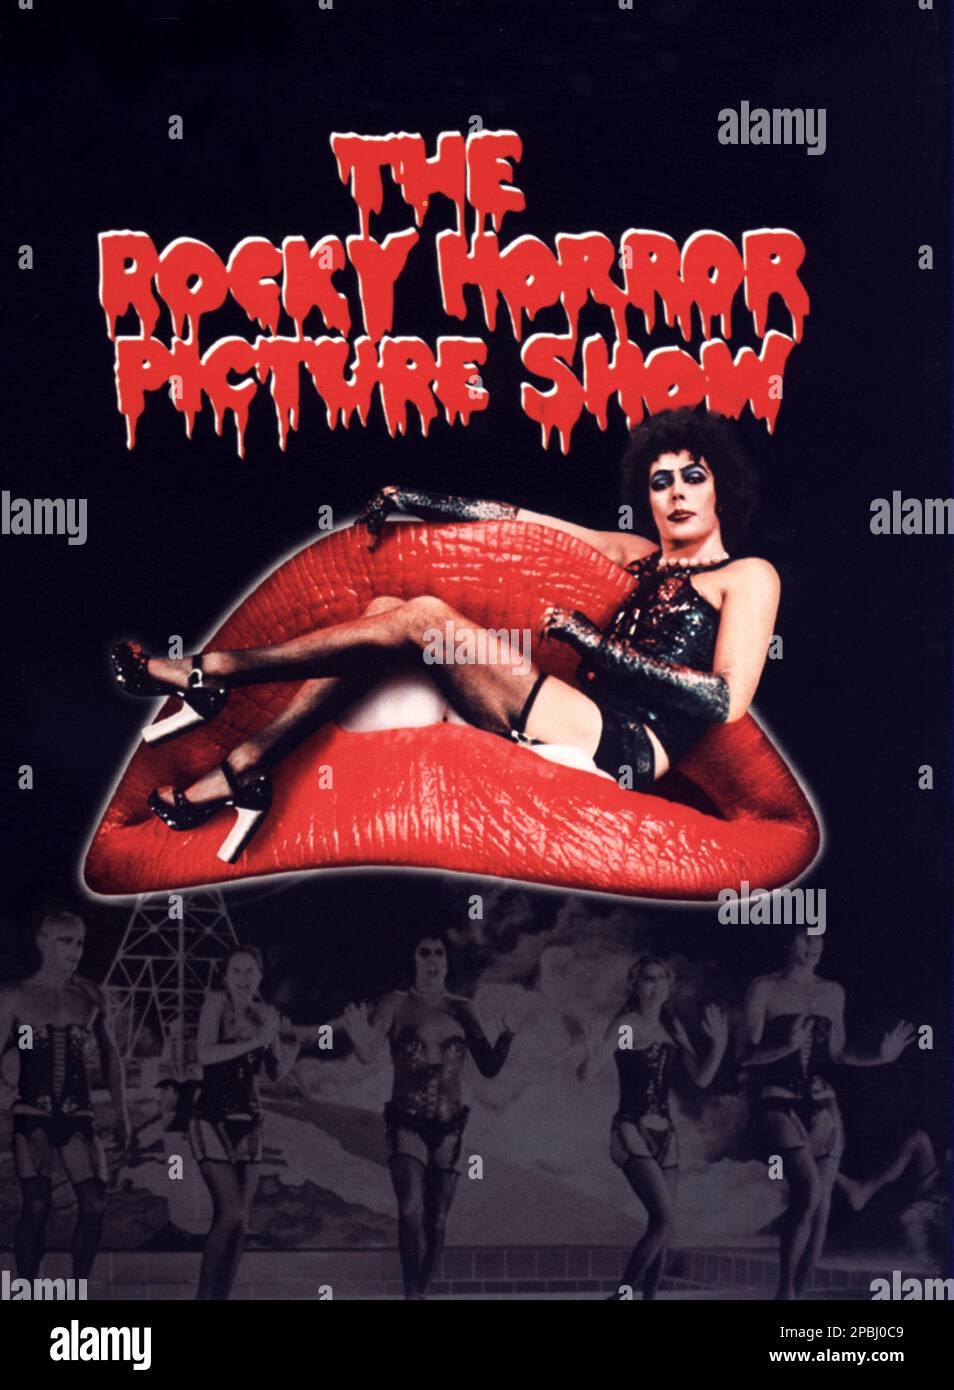 1975 : l'affiche italienne pour le film CULT THE ROCKY HORROR PICTURE SHOW , par Jim Sharman , avec de la musique de Richard O'Brian , avec TIM CURRY , Susan sarandon , Barry Bostwick, Meat Loaf - FILM - CINÉMA - affiche pubbliciario - affiche - publicité - locandina - bocca - bouche - labbra rosse - lèvres rouges - guepiere - tacchi - roues - scarpe - chaussures - GAY - HOMOSEXUEL - HOMOSEXUALITÉ - OMOSESSUALE - omosessualità - LGBT - bisexualité - Bisessualita' - transvestite - travestito - transgenre - trans - GLTB - MUSICAL ---- NON POUR LA PUBLICITÉ PUBBLICITARY UTILISATION --- NON PER USO Ñ ICI Banque D'Images